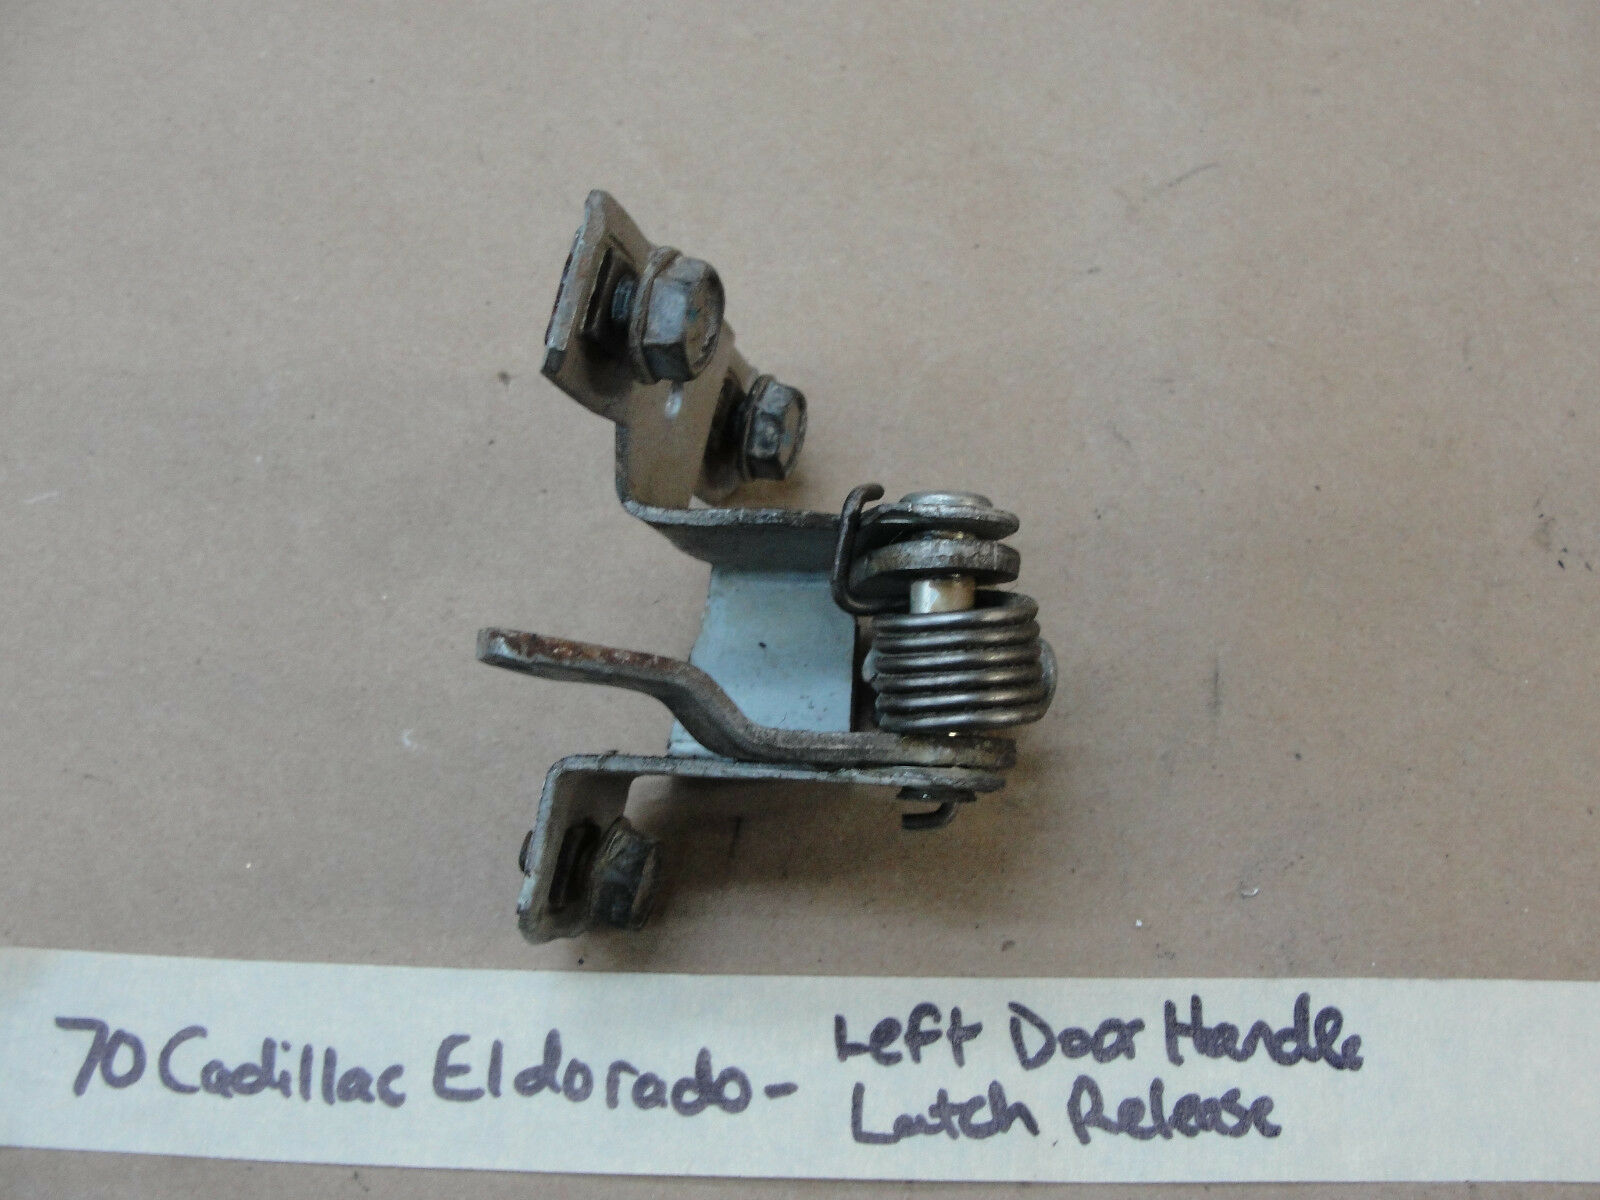 Primary image for 70 Cadillac Eldorado LEFT (DRIVER) DOOR HANDLE LATCH RELEASE MECHANISM HARDWARE